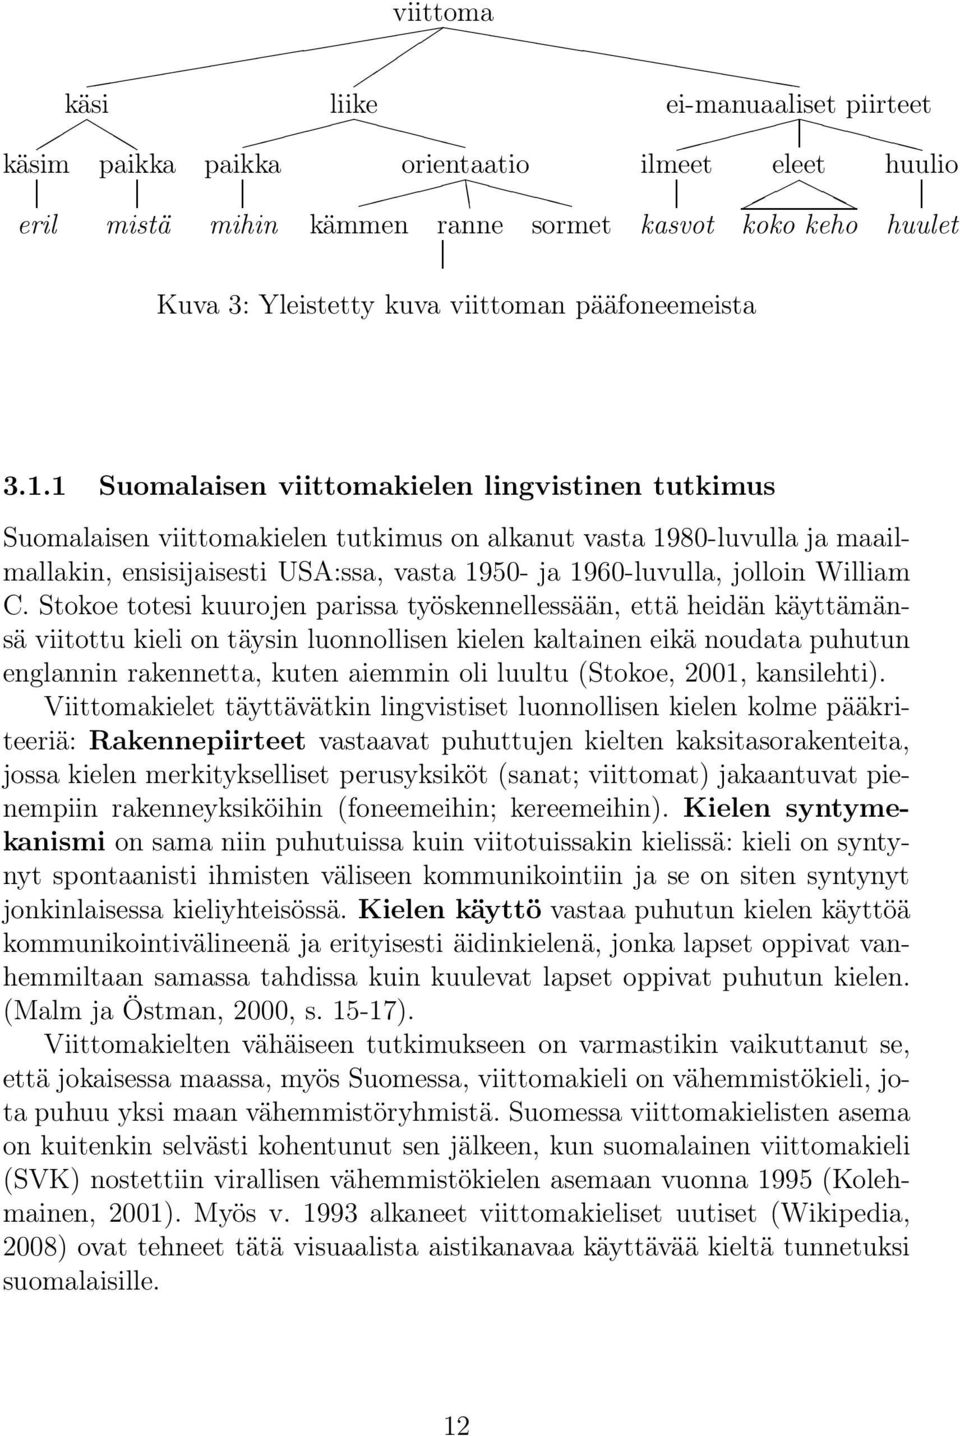 1 Suomalaisen viittomakielen lingvistinen tutkimus Suomalaisen viittomakielen tutkimus on alkanut vasta 1980-luvulla ja maailmallakin, ensisijaisesti USA:ssa, vasta 1950- ja 1960-luvulla, jolloin